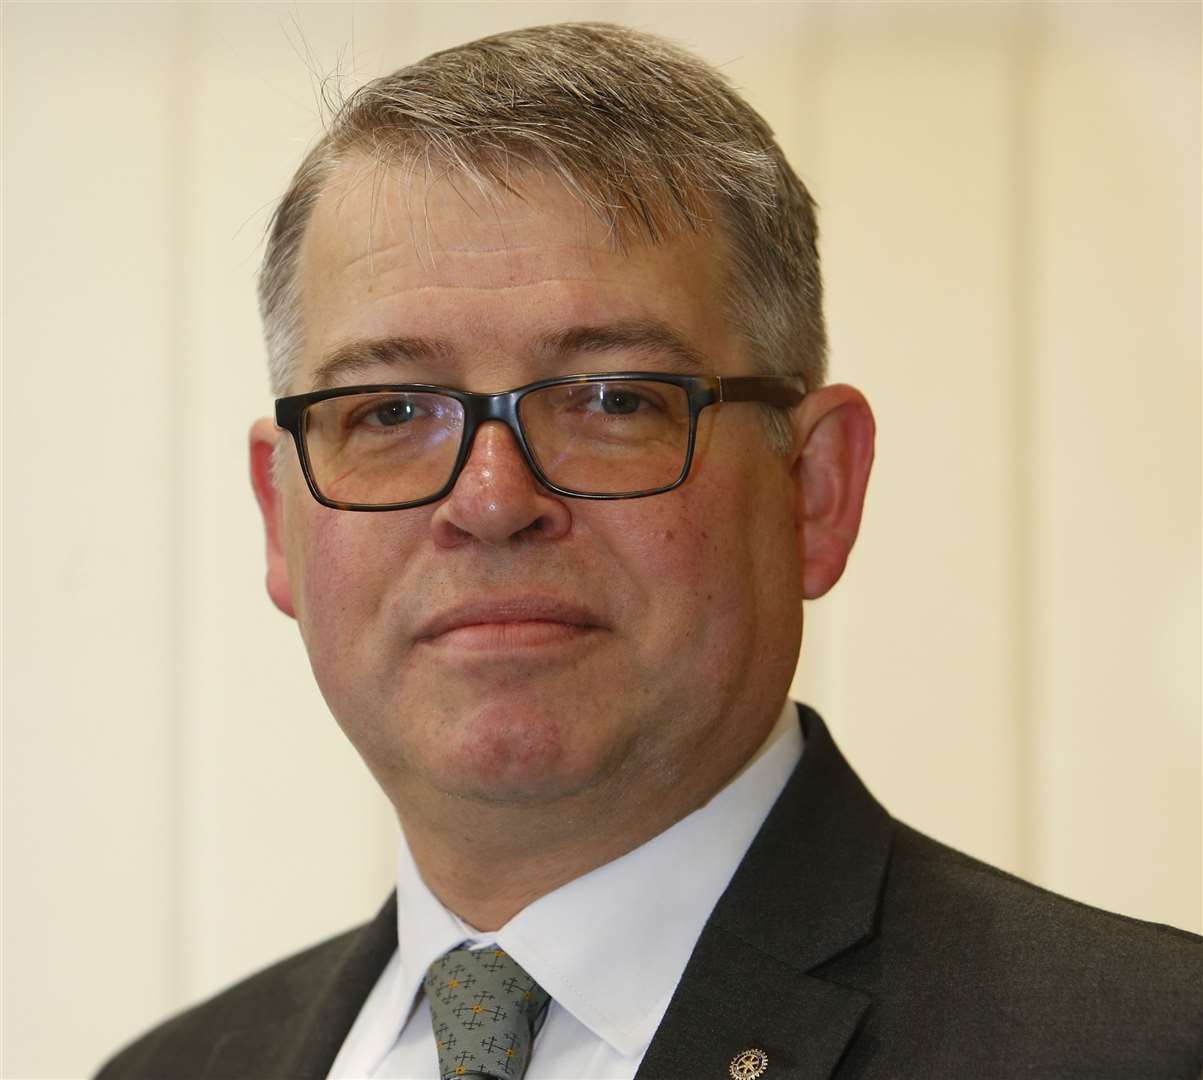 Maidstone Borough Council leader Martin Cox